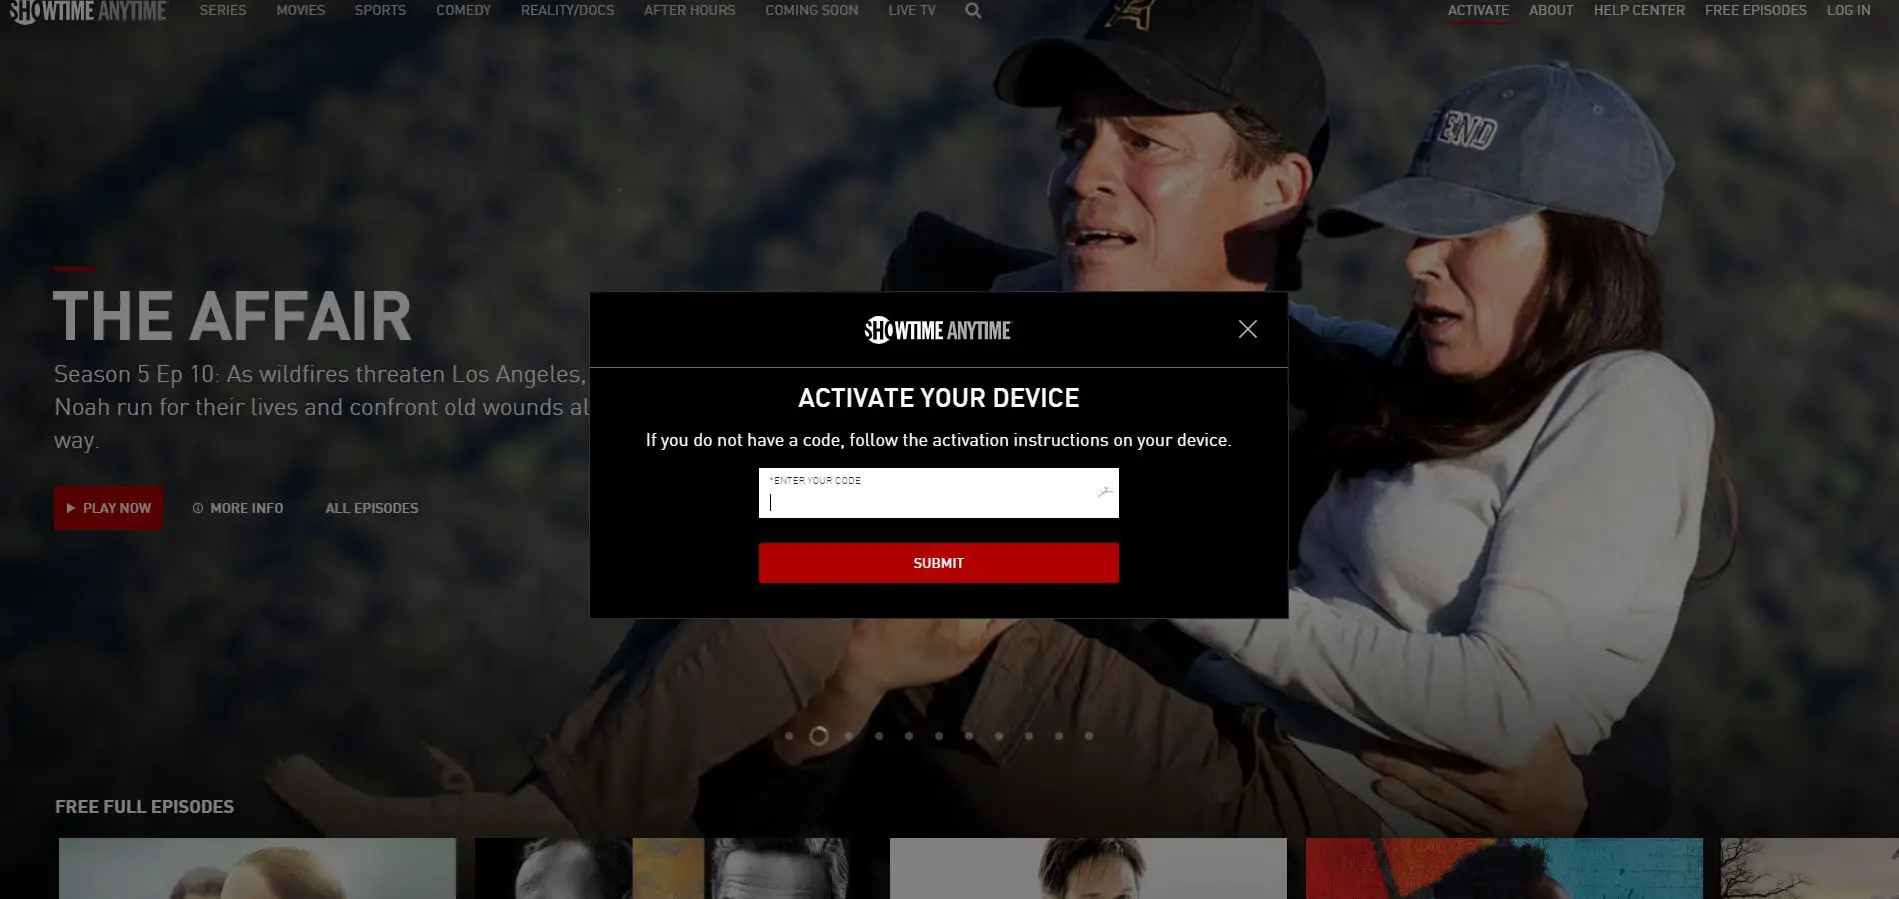 Captura de tela da página de ativação do dispositivo Showtime Anytime